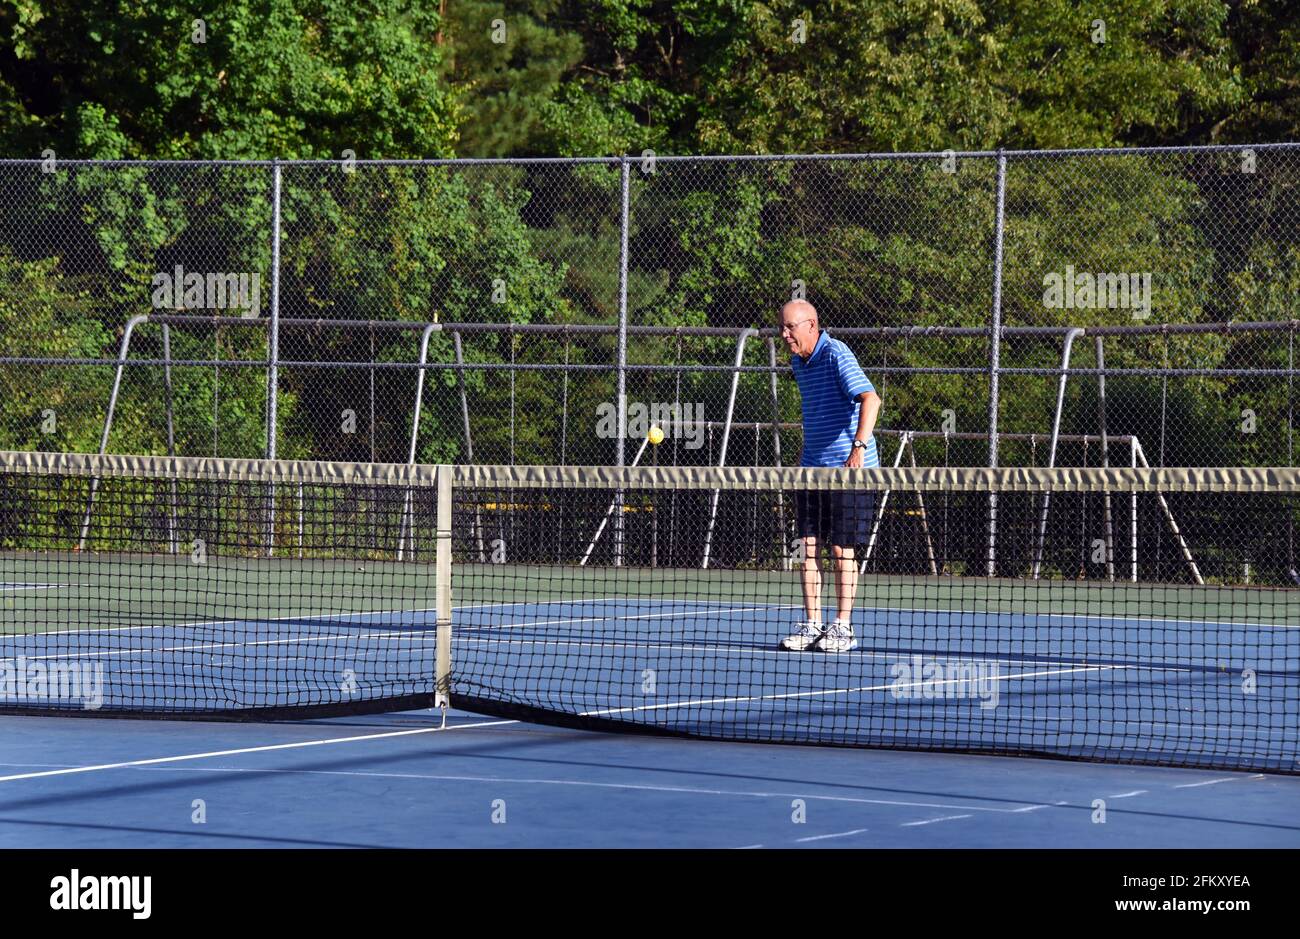 La boule de pickle rebondit dans l'air et l'homme âgé balance. Il joue sur un court de tennis. Banque D'Images